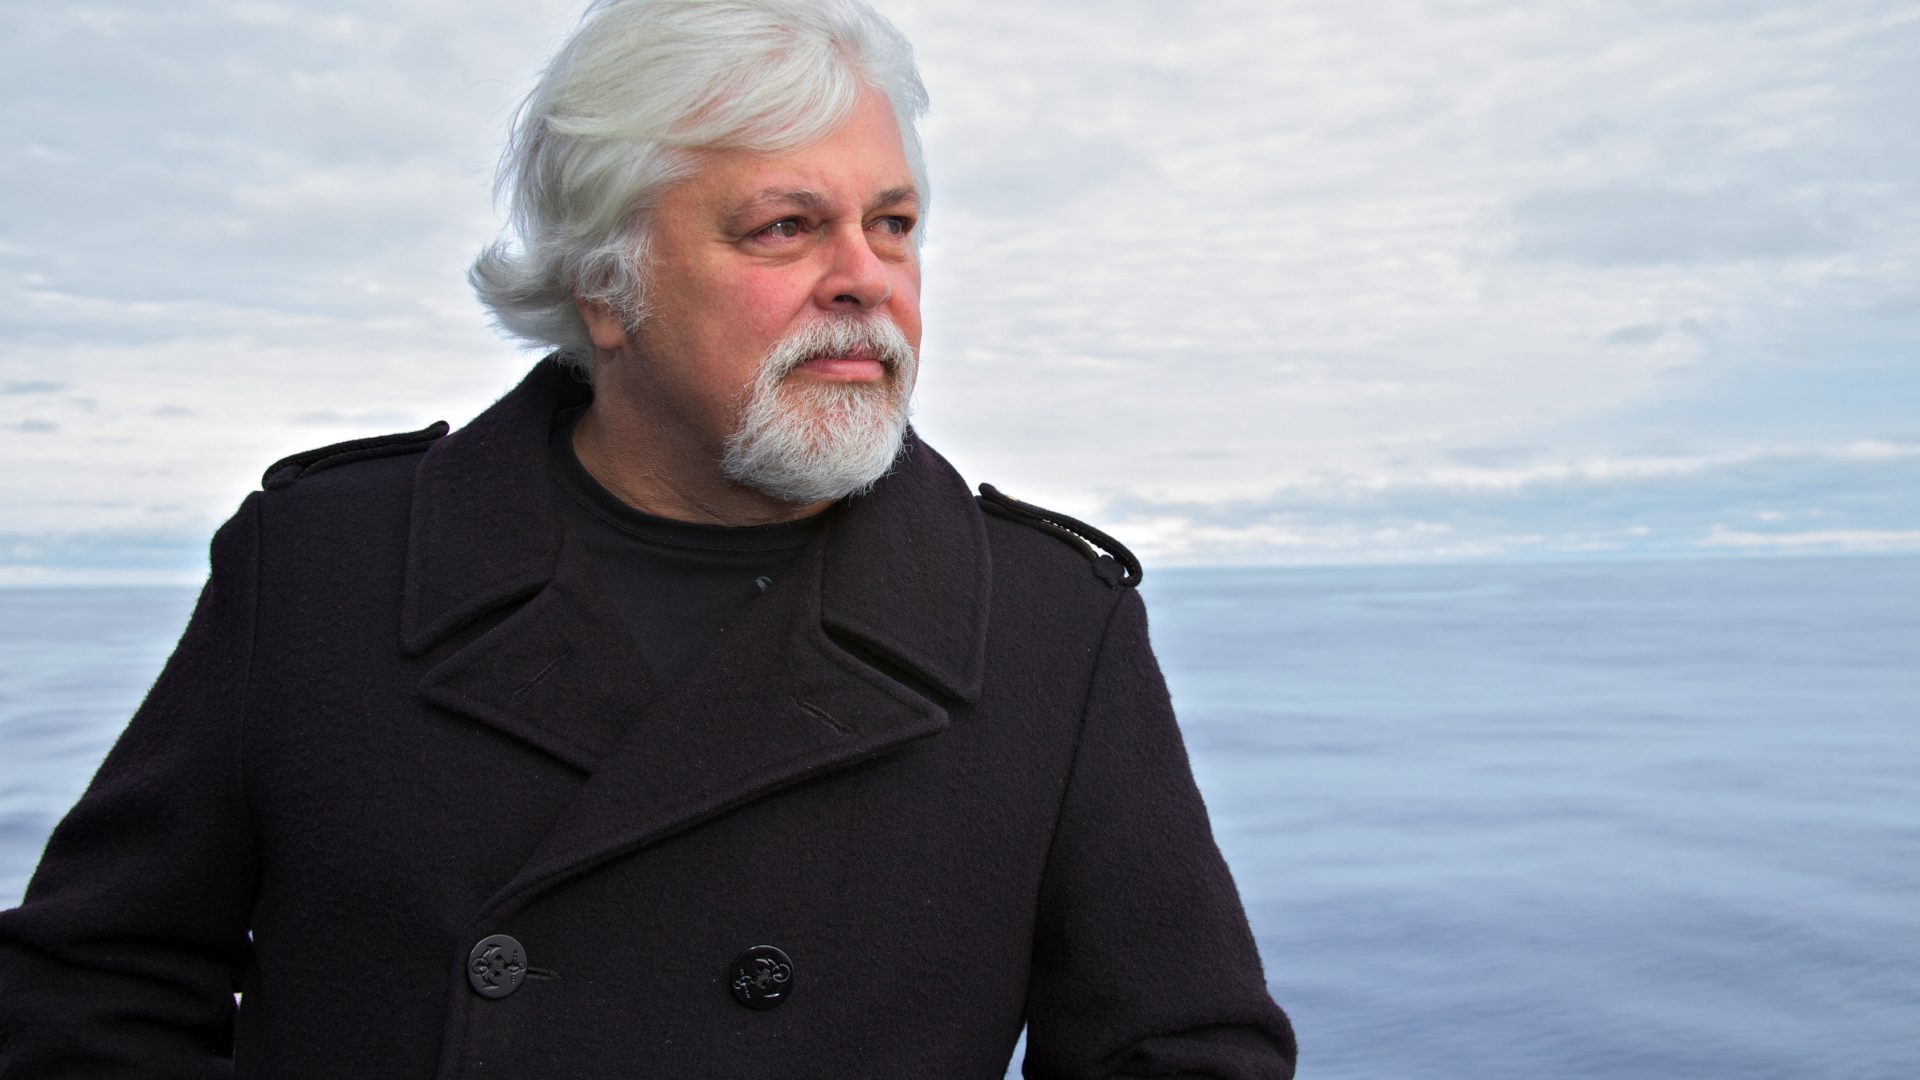 Gute Nachrichten von Captain Paul Watson: Nach 40 Monaten kehrt der Meeresaktivist in die Führung von Sea Shepherd zurück!